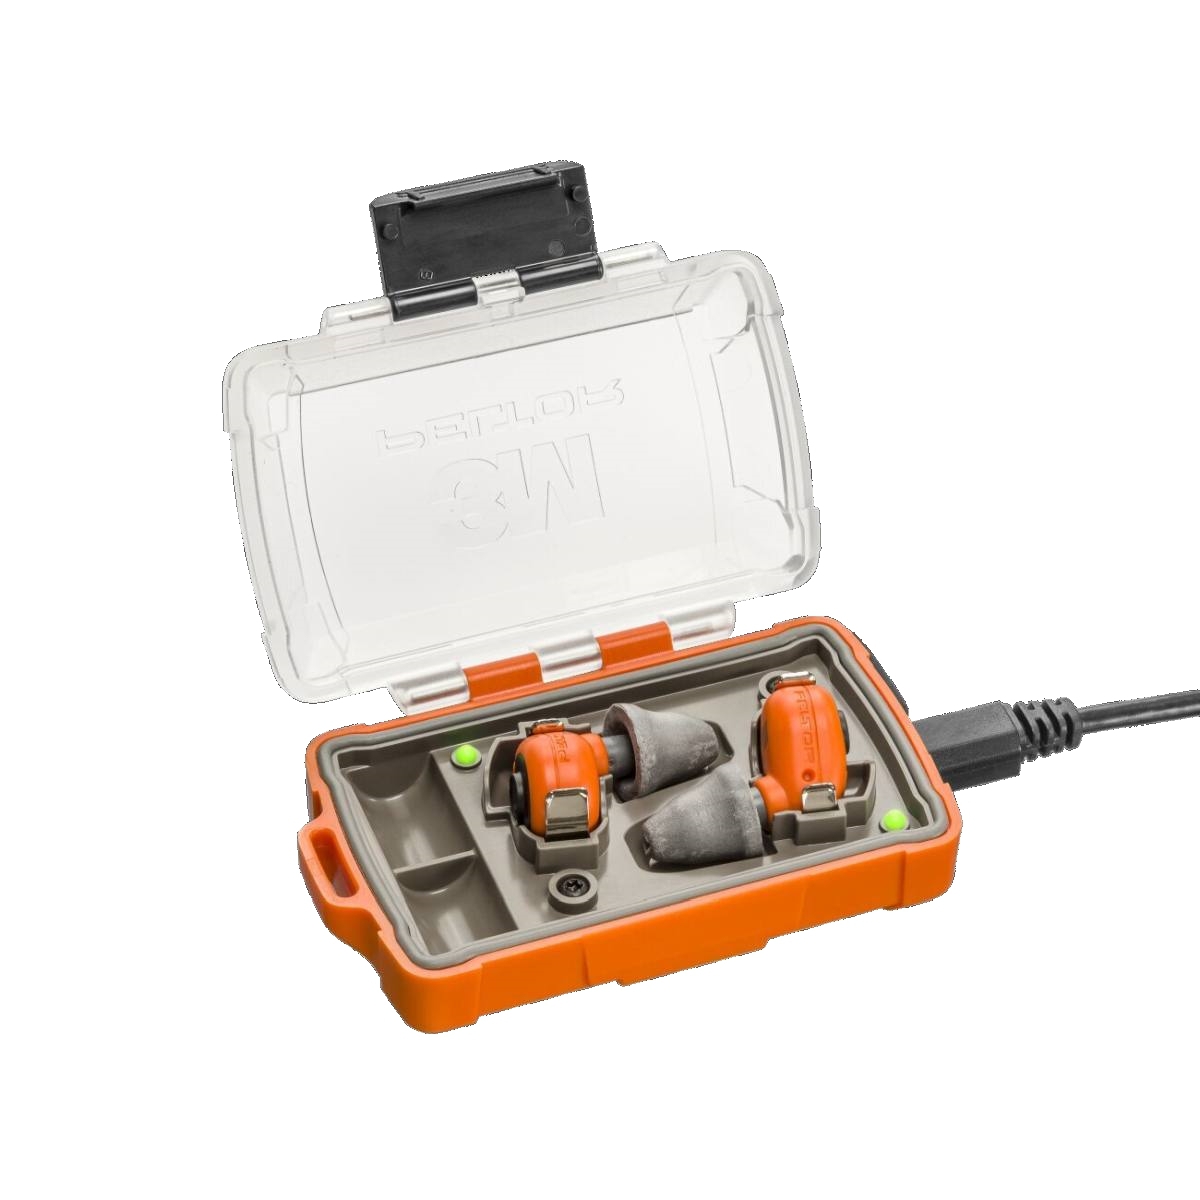 3M PELTOR EEP-100 EU Elektronische oordopjes oranje, set: oordopjes en oplaadstation (met gesloten deksel en USB-poorten) zijn IP-54 en waterdicht